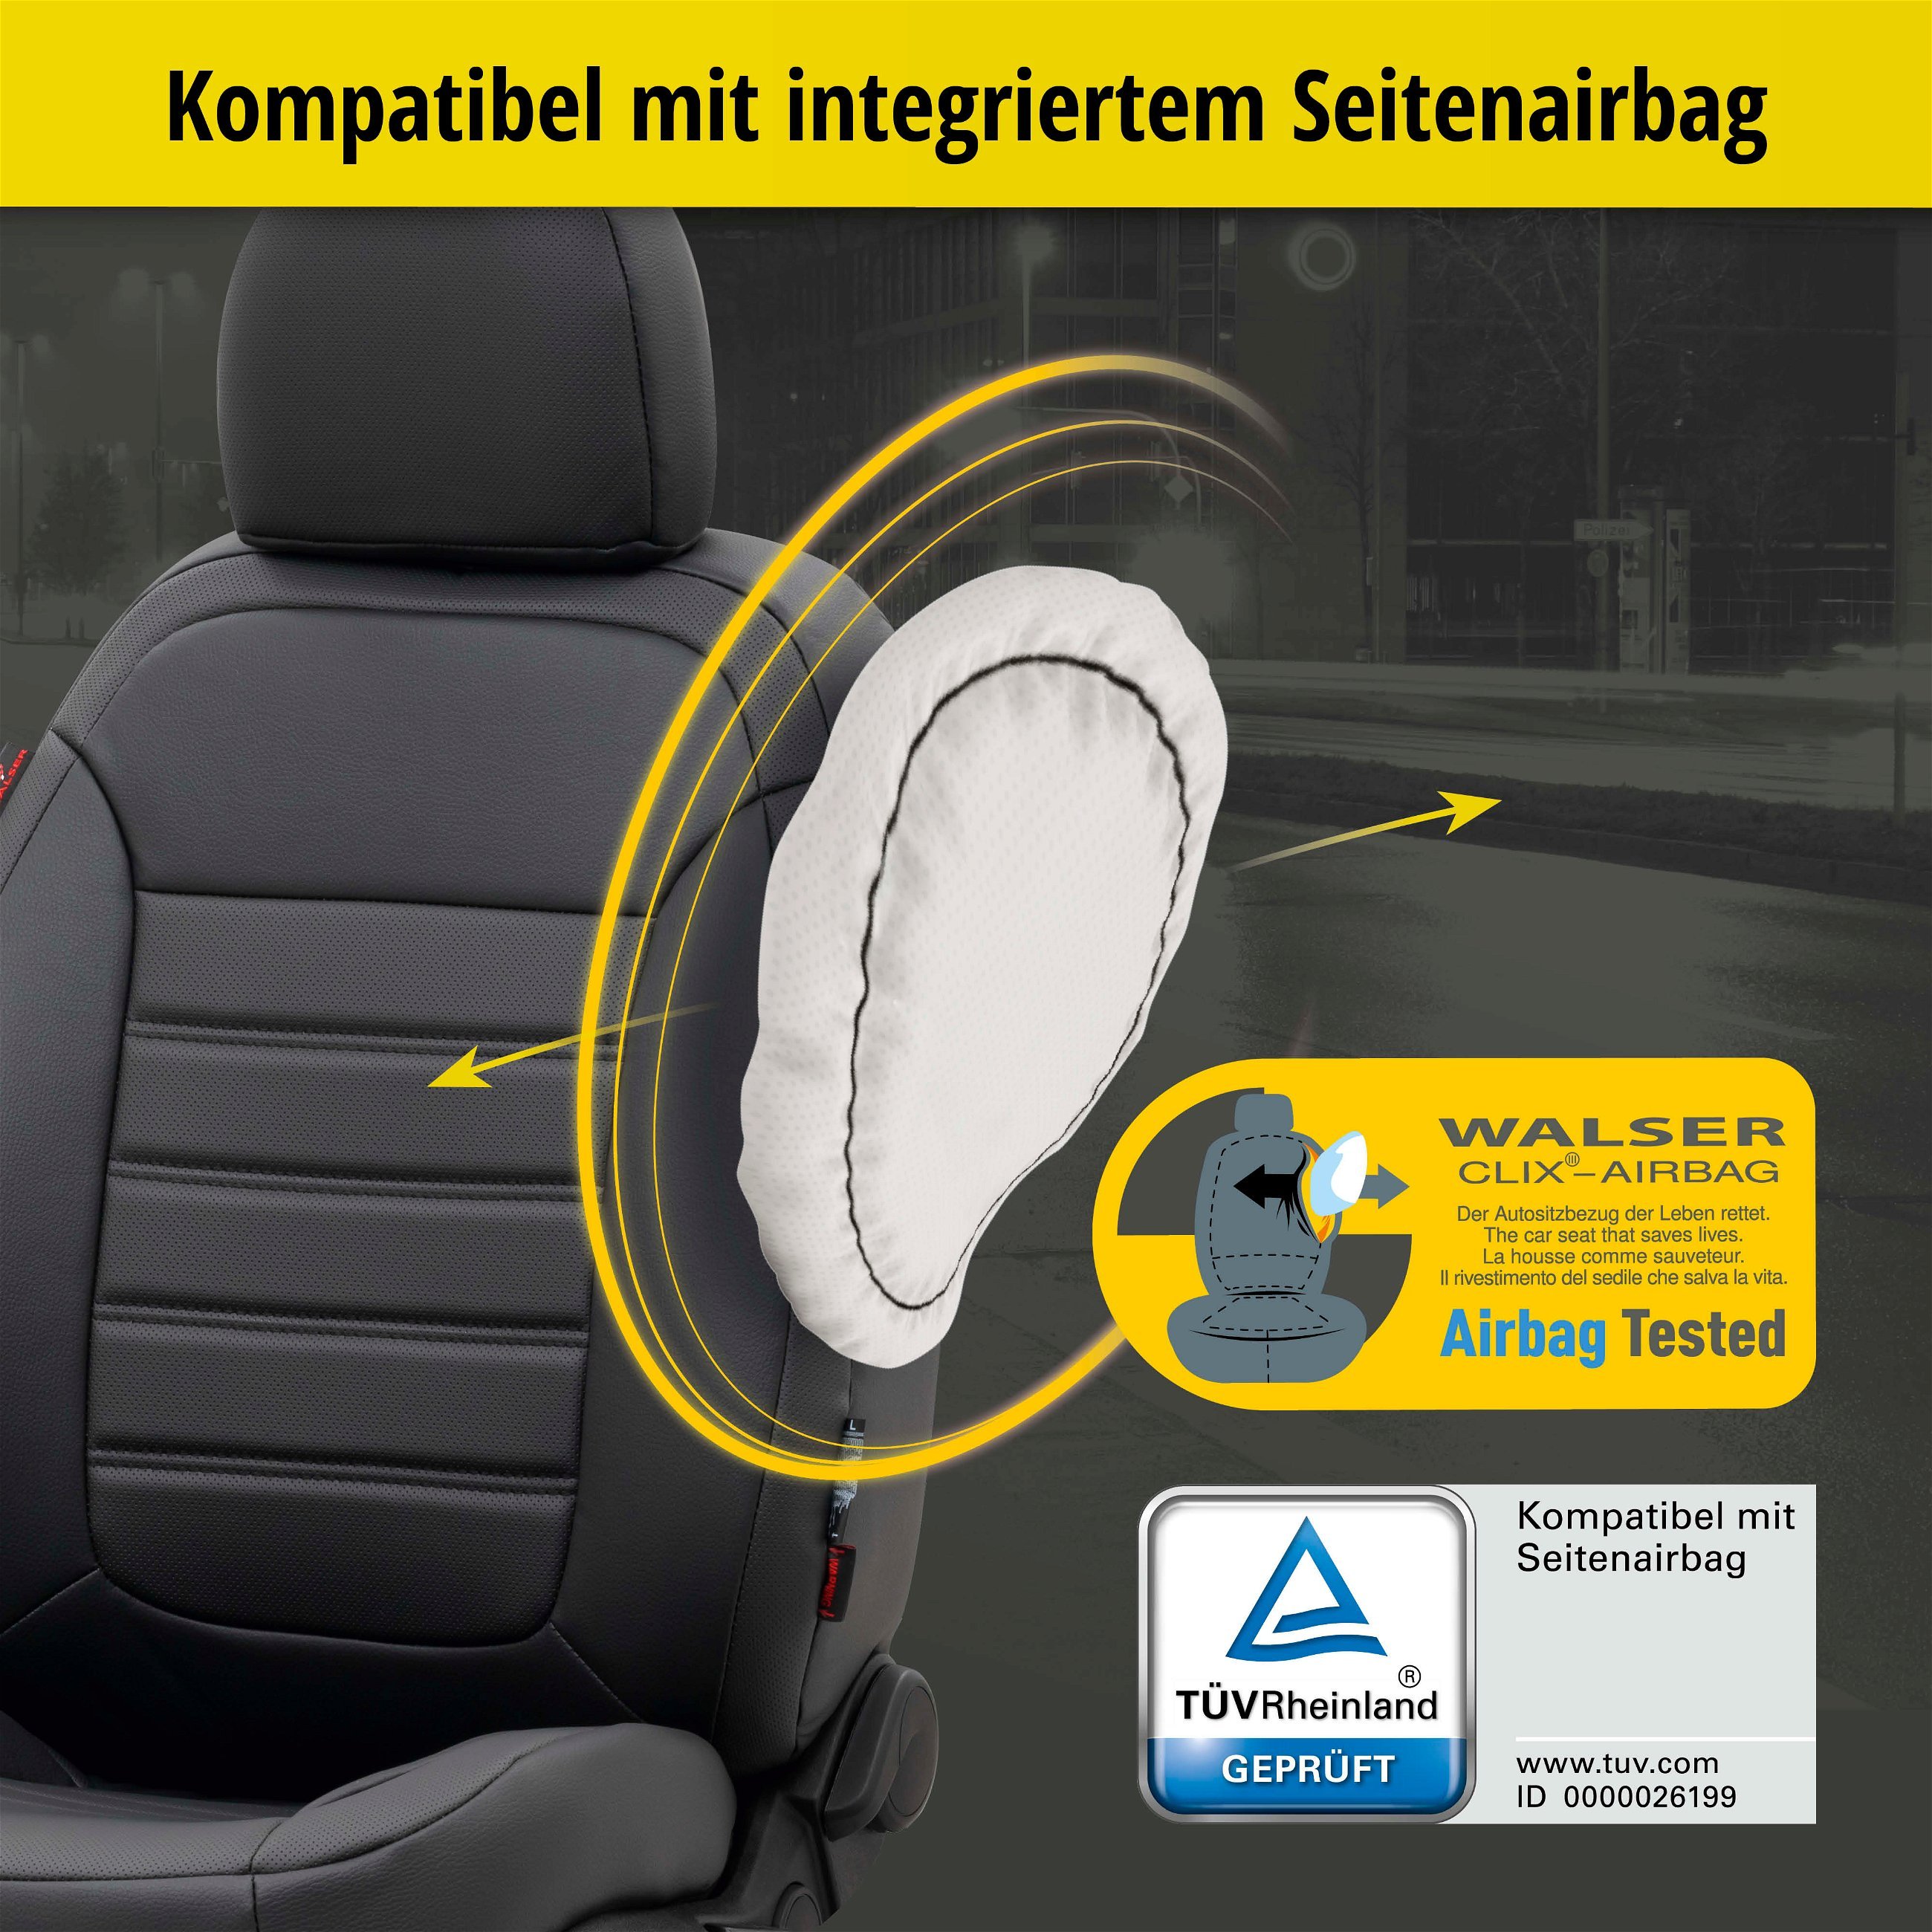 Passform Sitzbezug Robusto für VW Golf 7 Trendline 08/2012-03/2021, 2 Einzelsitzbezüge für Normalsitze